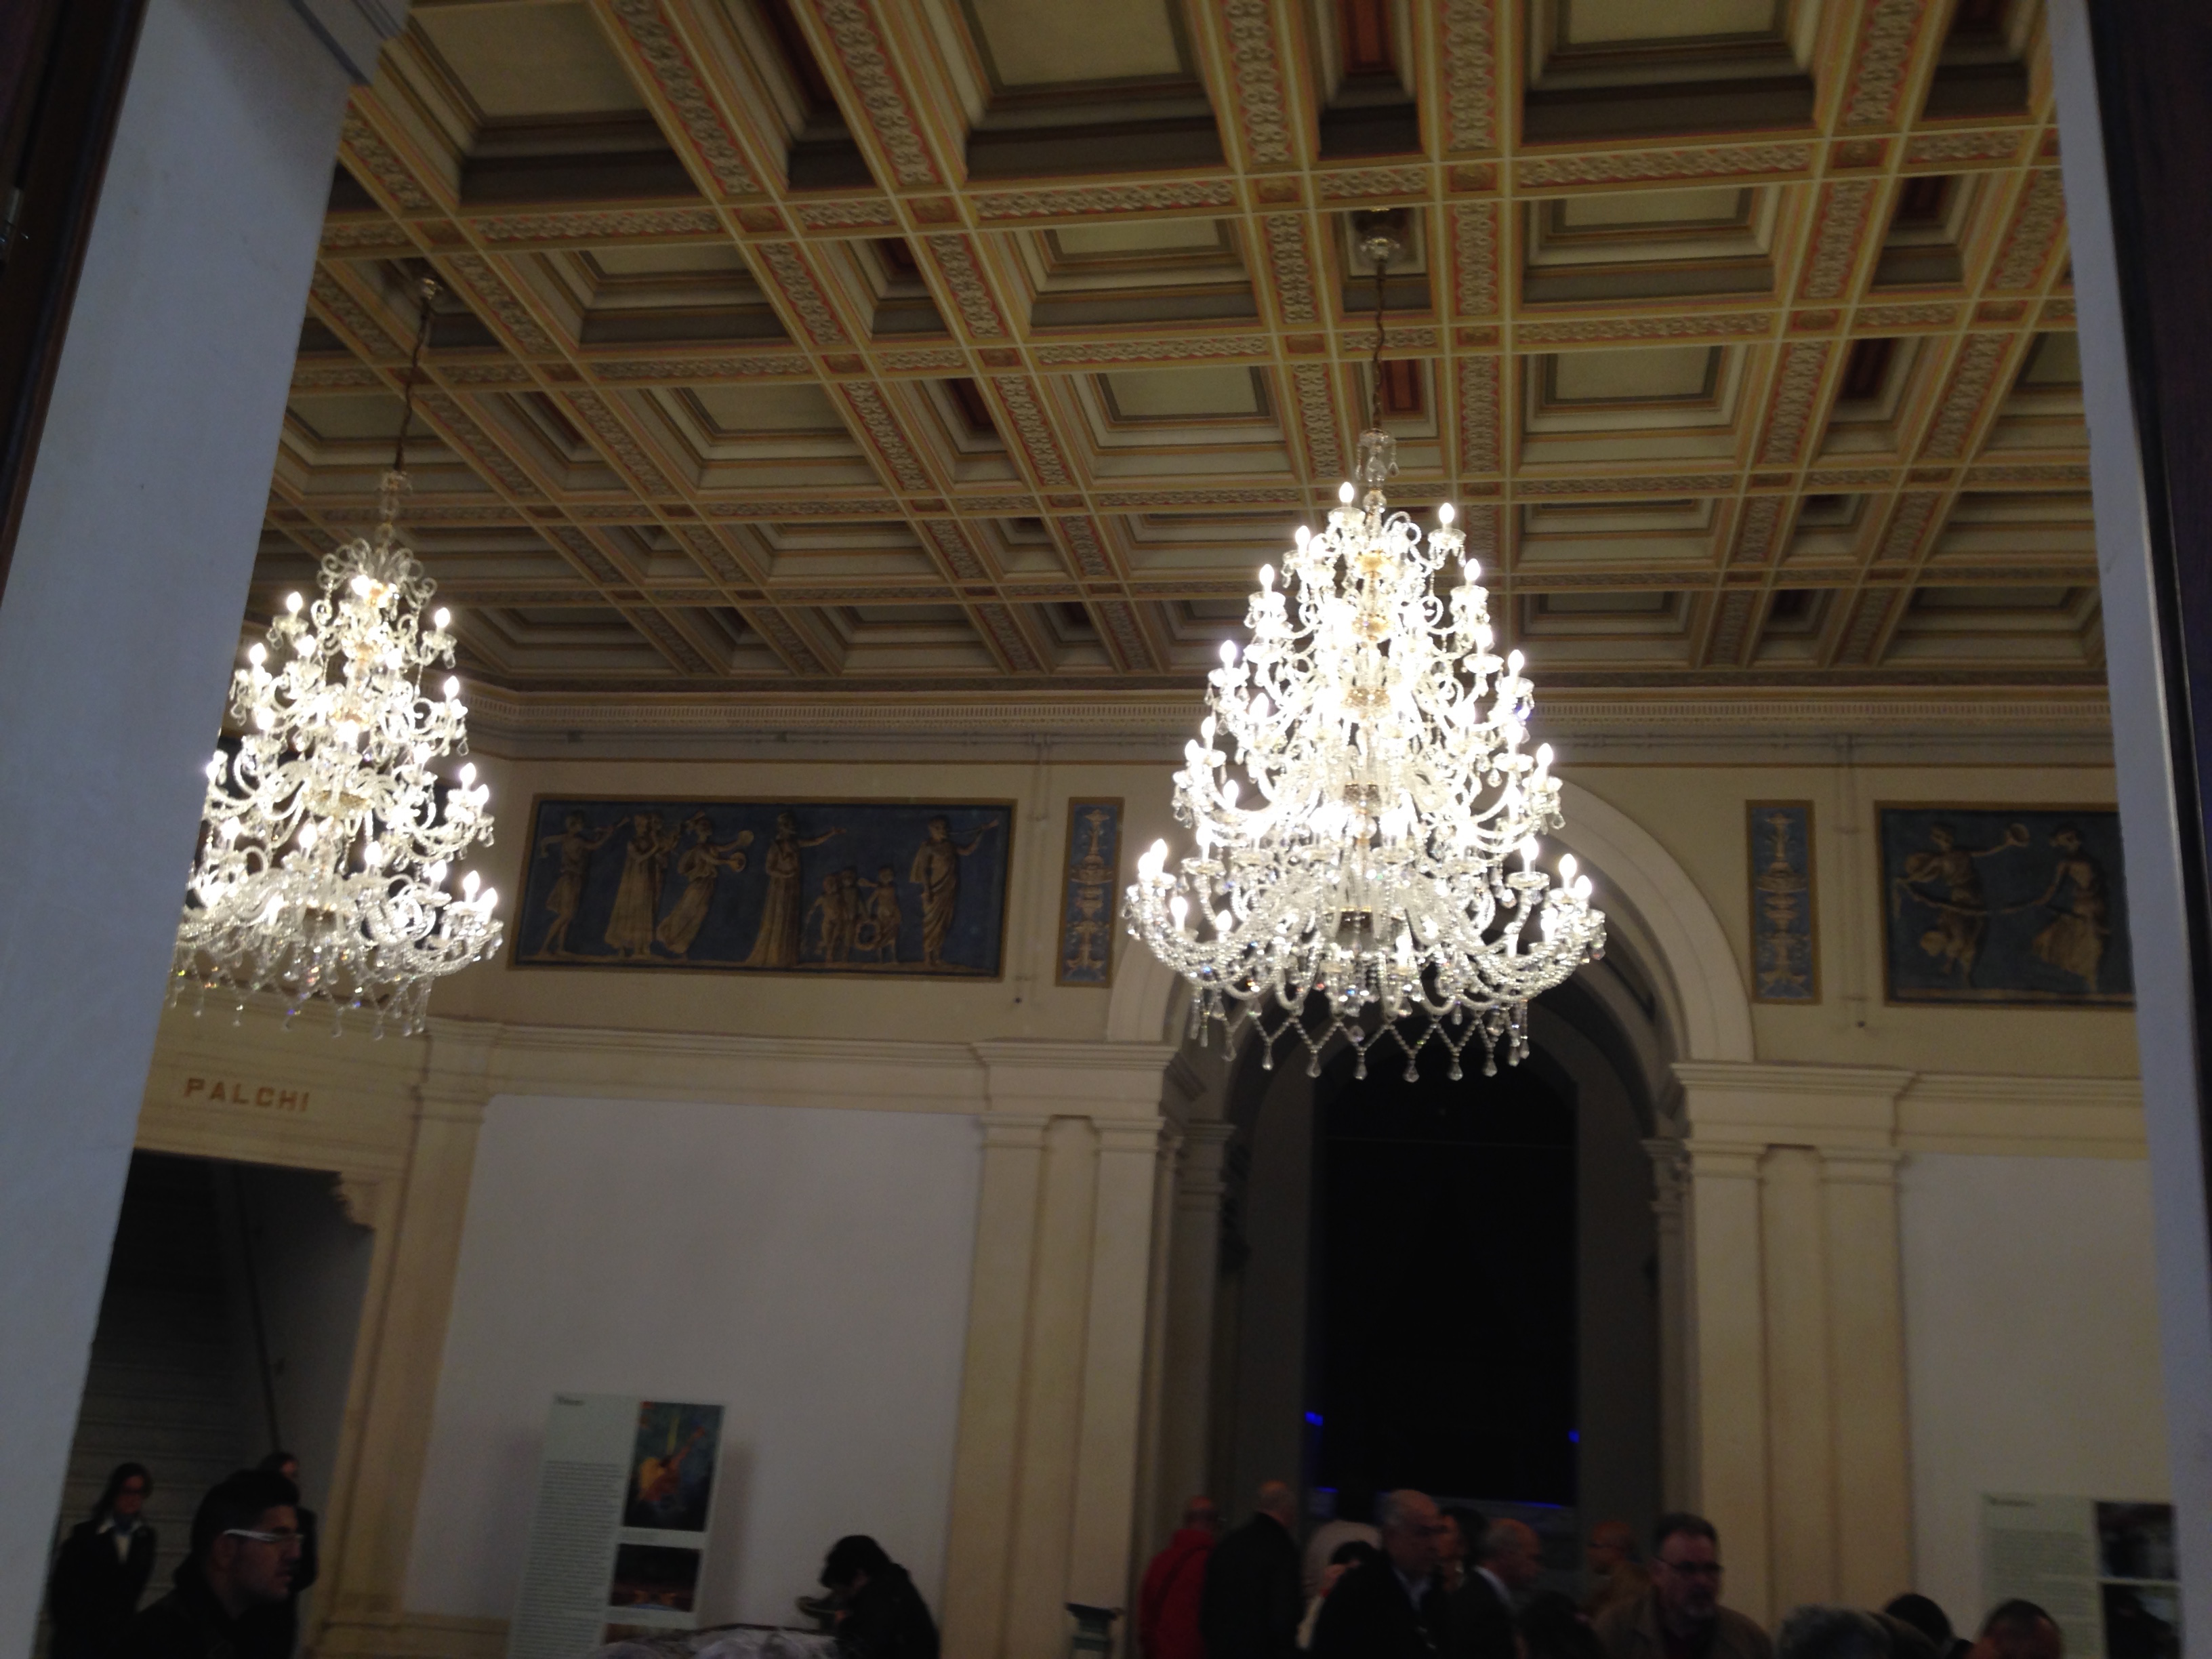 Ingresso del Teatro Comunale: lampadari donati dagli stilisti Dolce & Gabbana